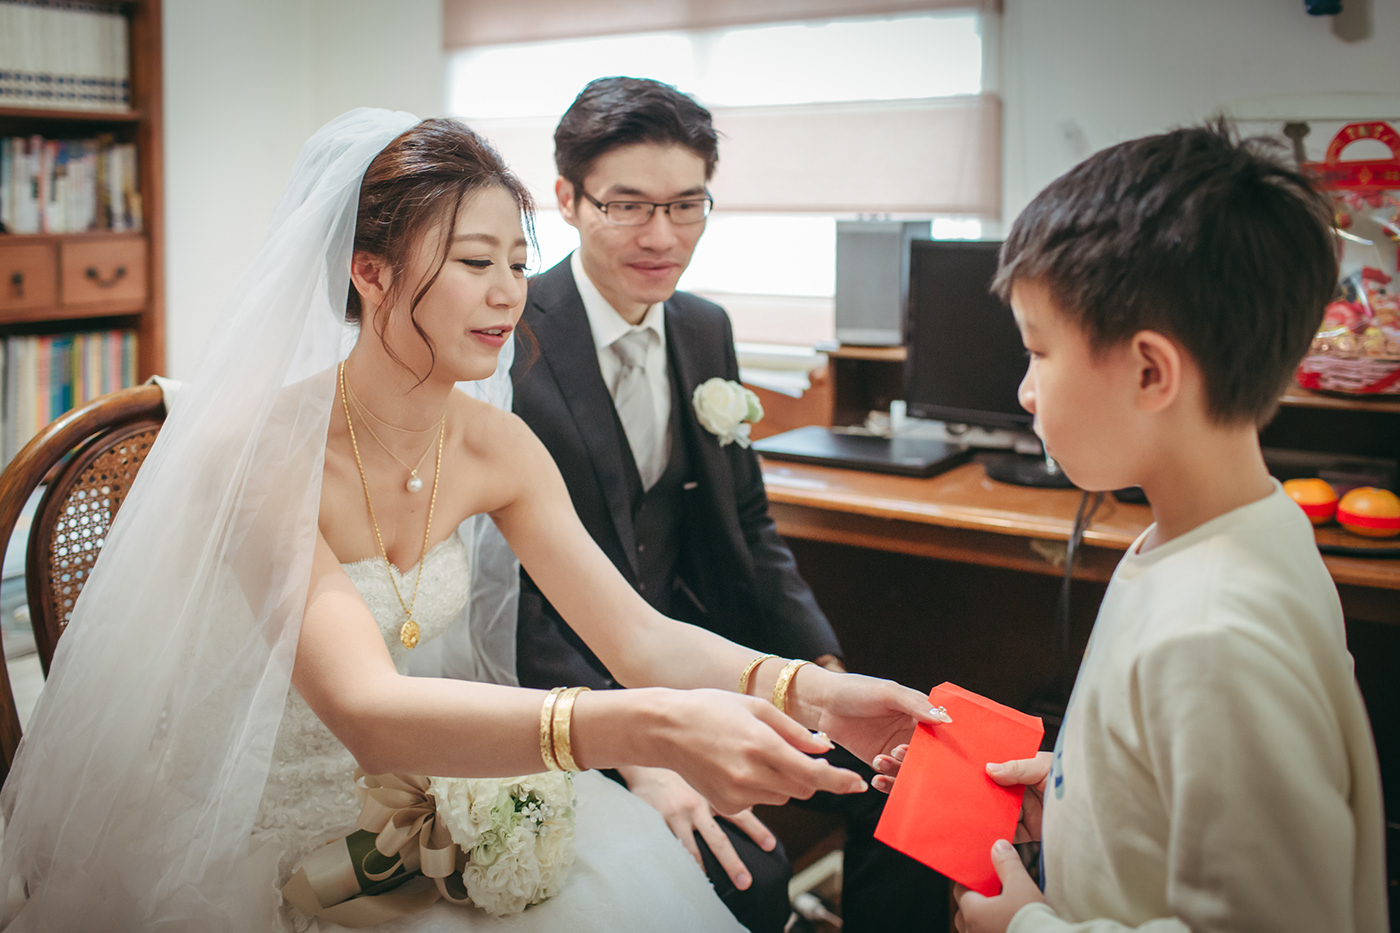 婚禮紀錄 wedding 紅啤酒 Bilu Chen 婚攝 安比影像 AnnBii 新人 執子之手